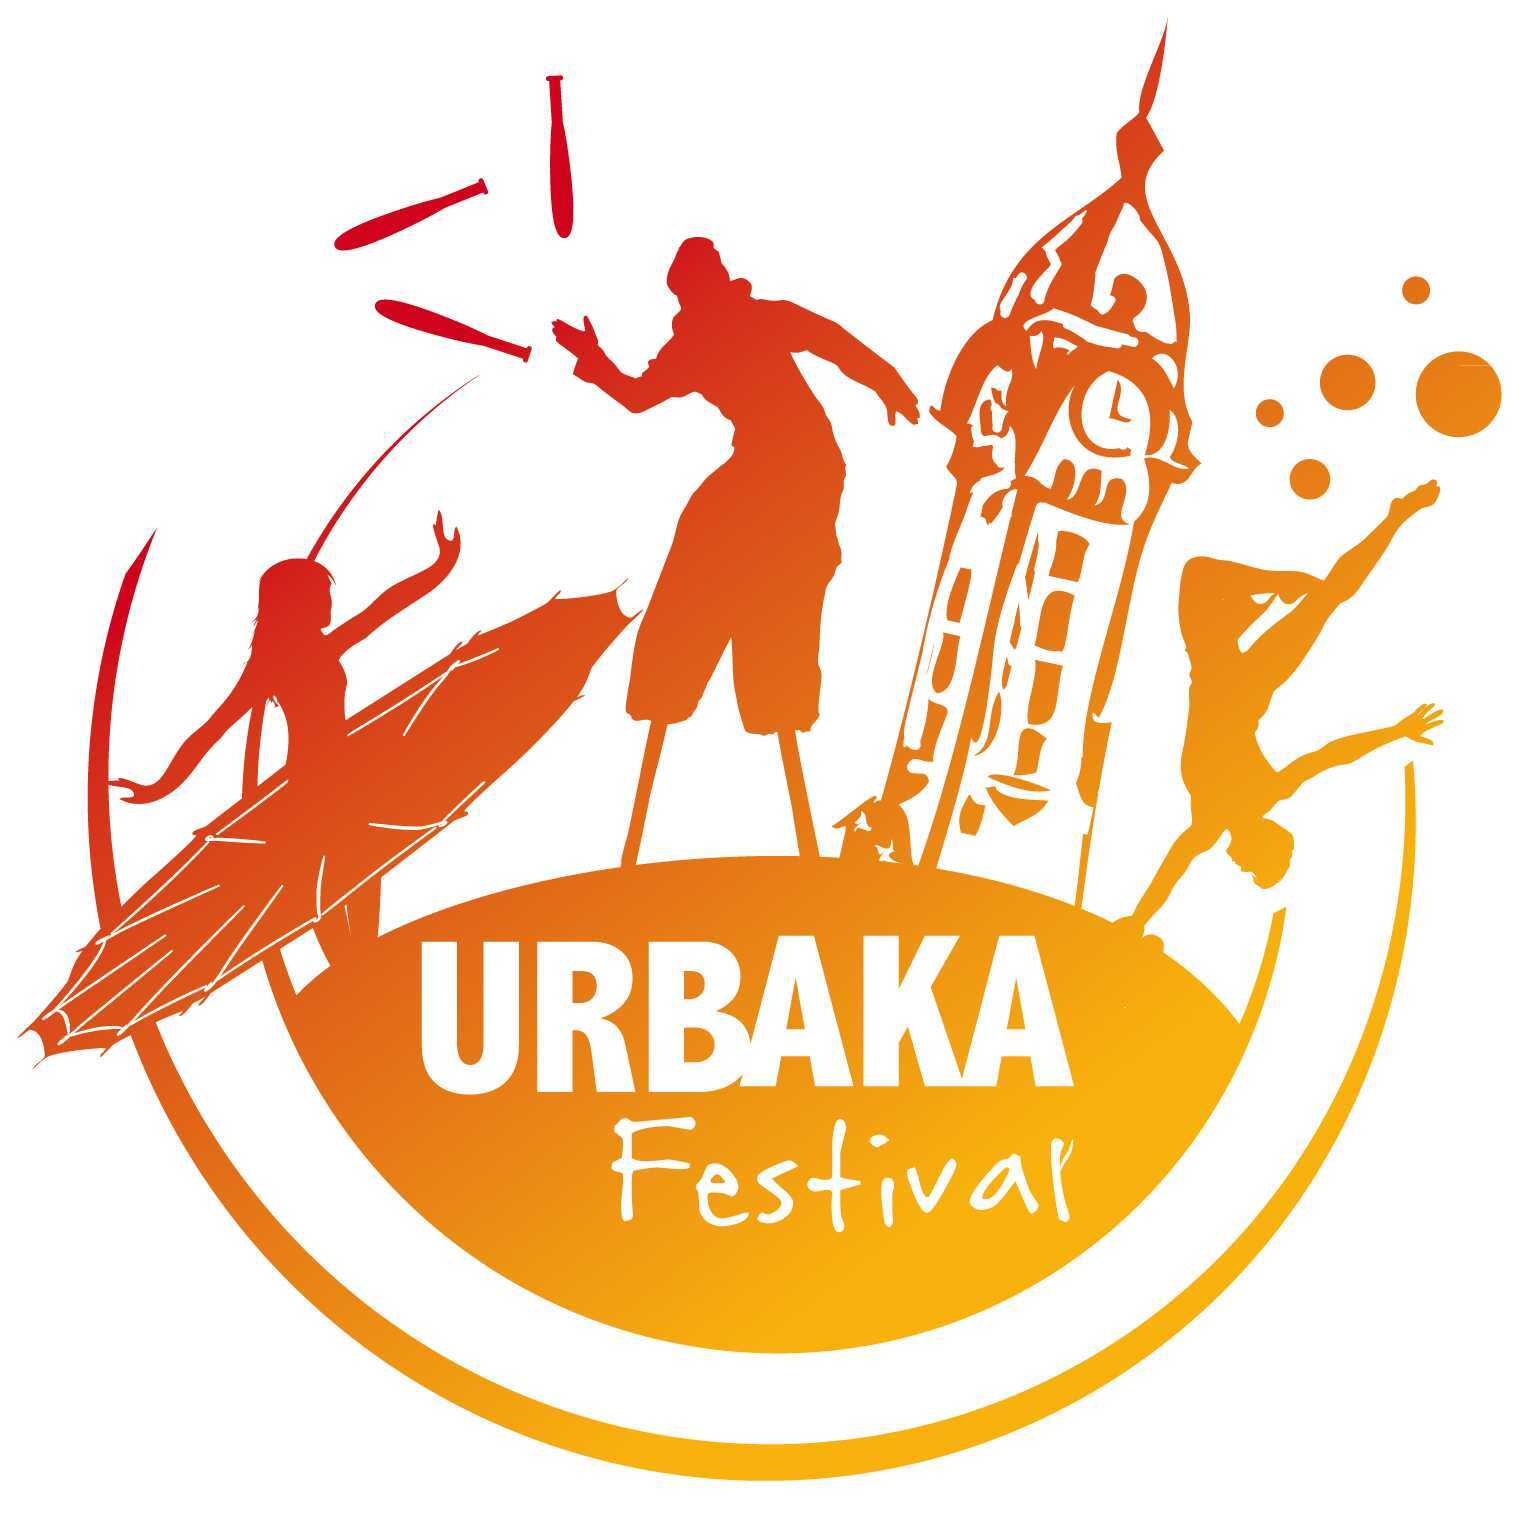 Le Festival Urbaka